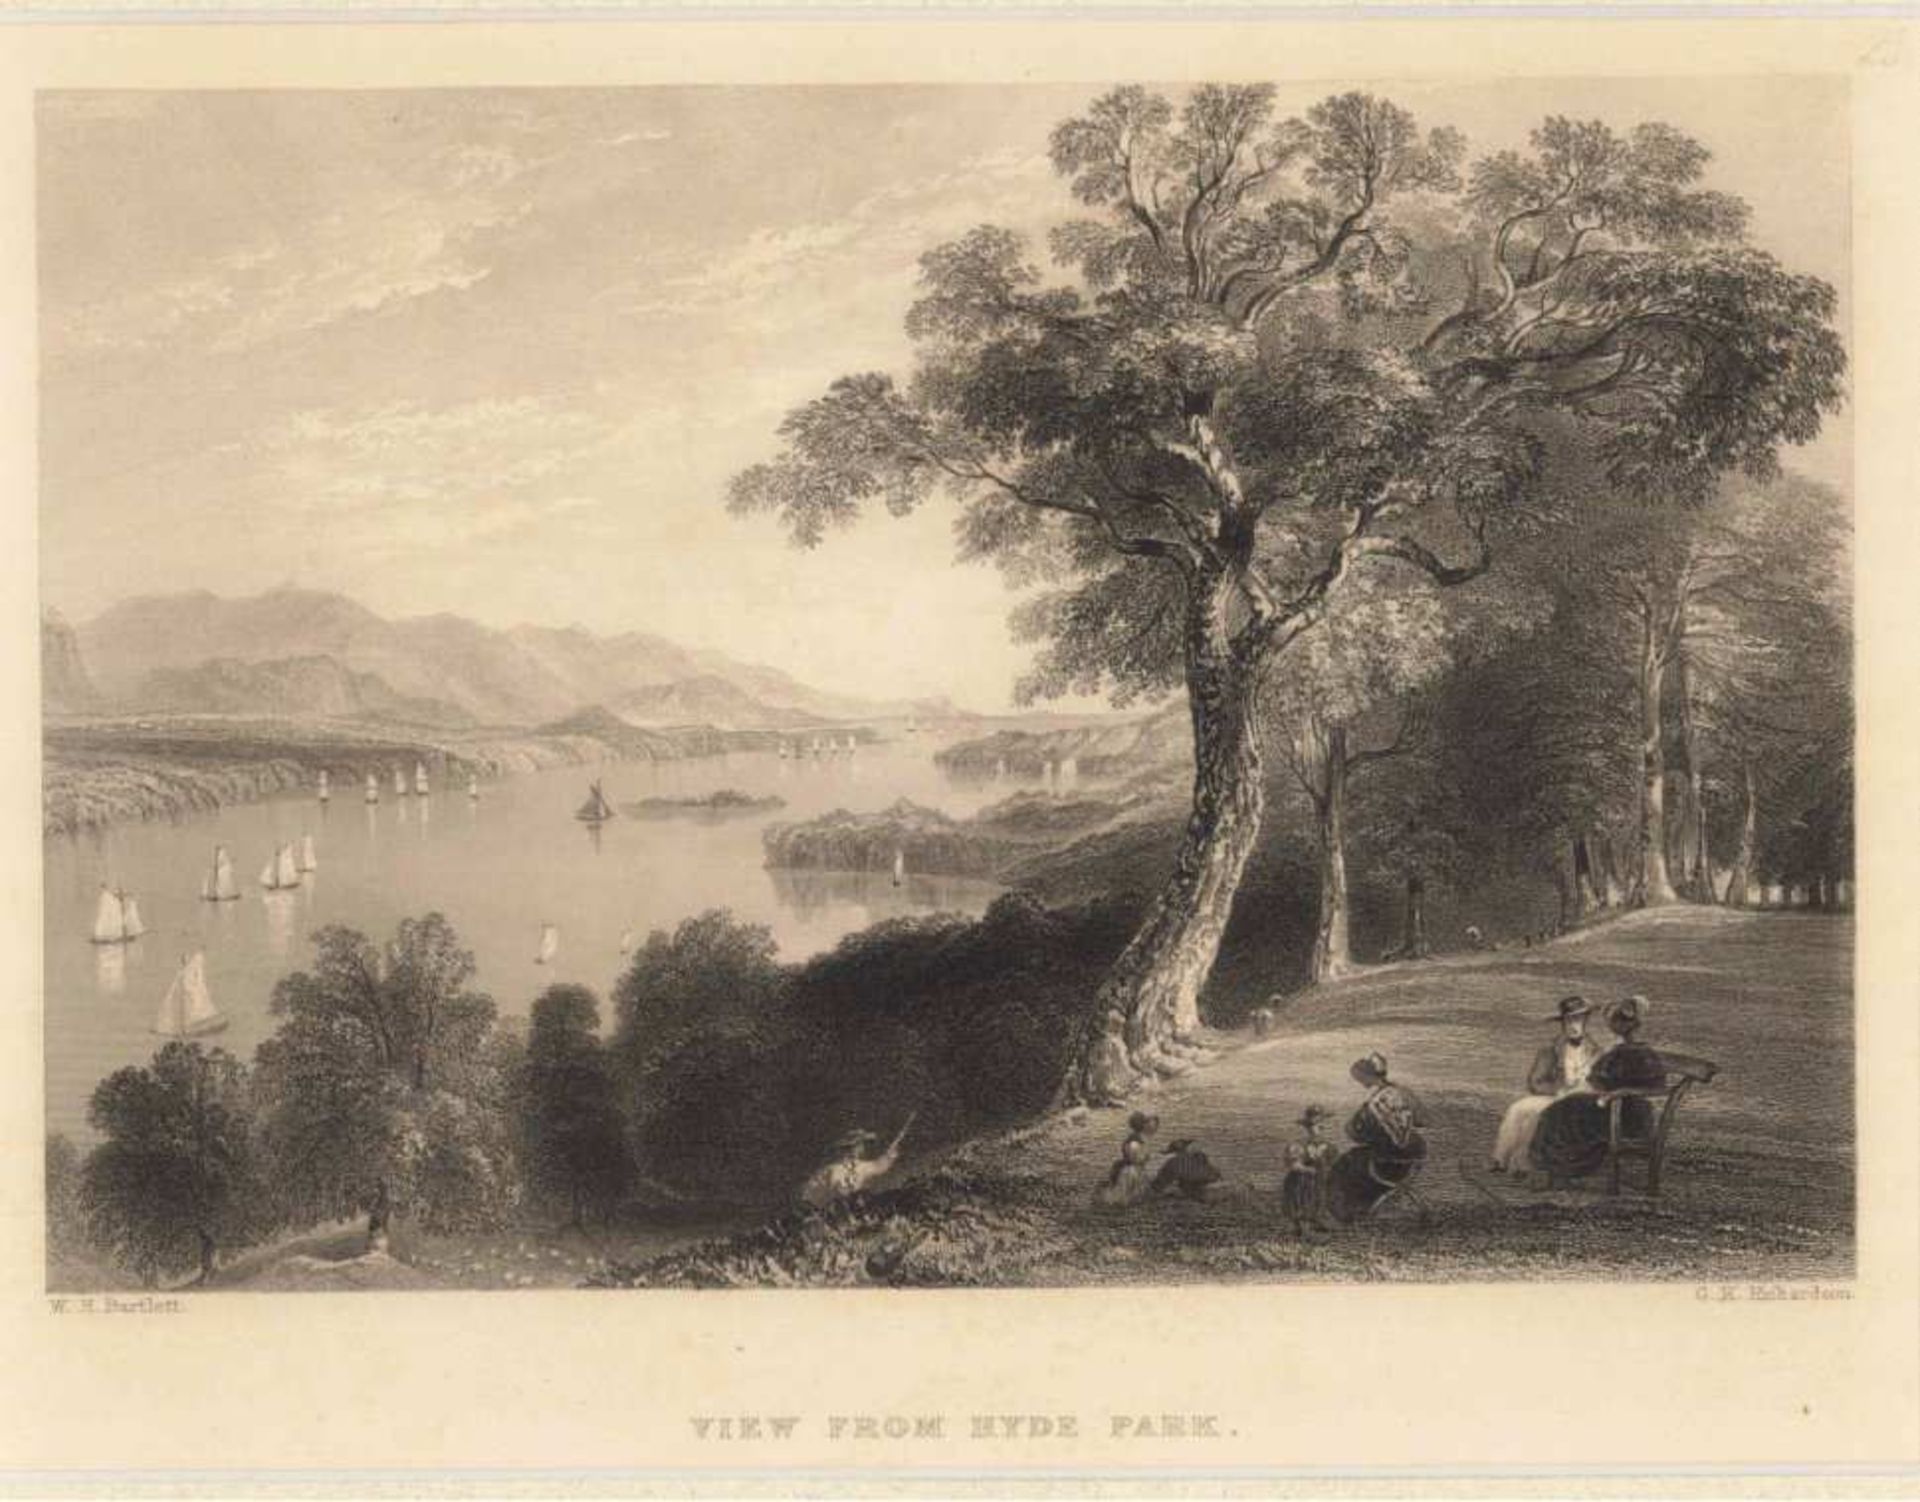 2 Stahlstiche - New York"Rathaus zu New York" und "View from Hyde Park", um 1840,der erste der